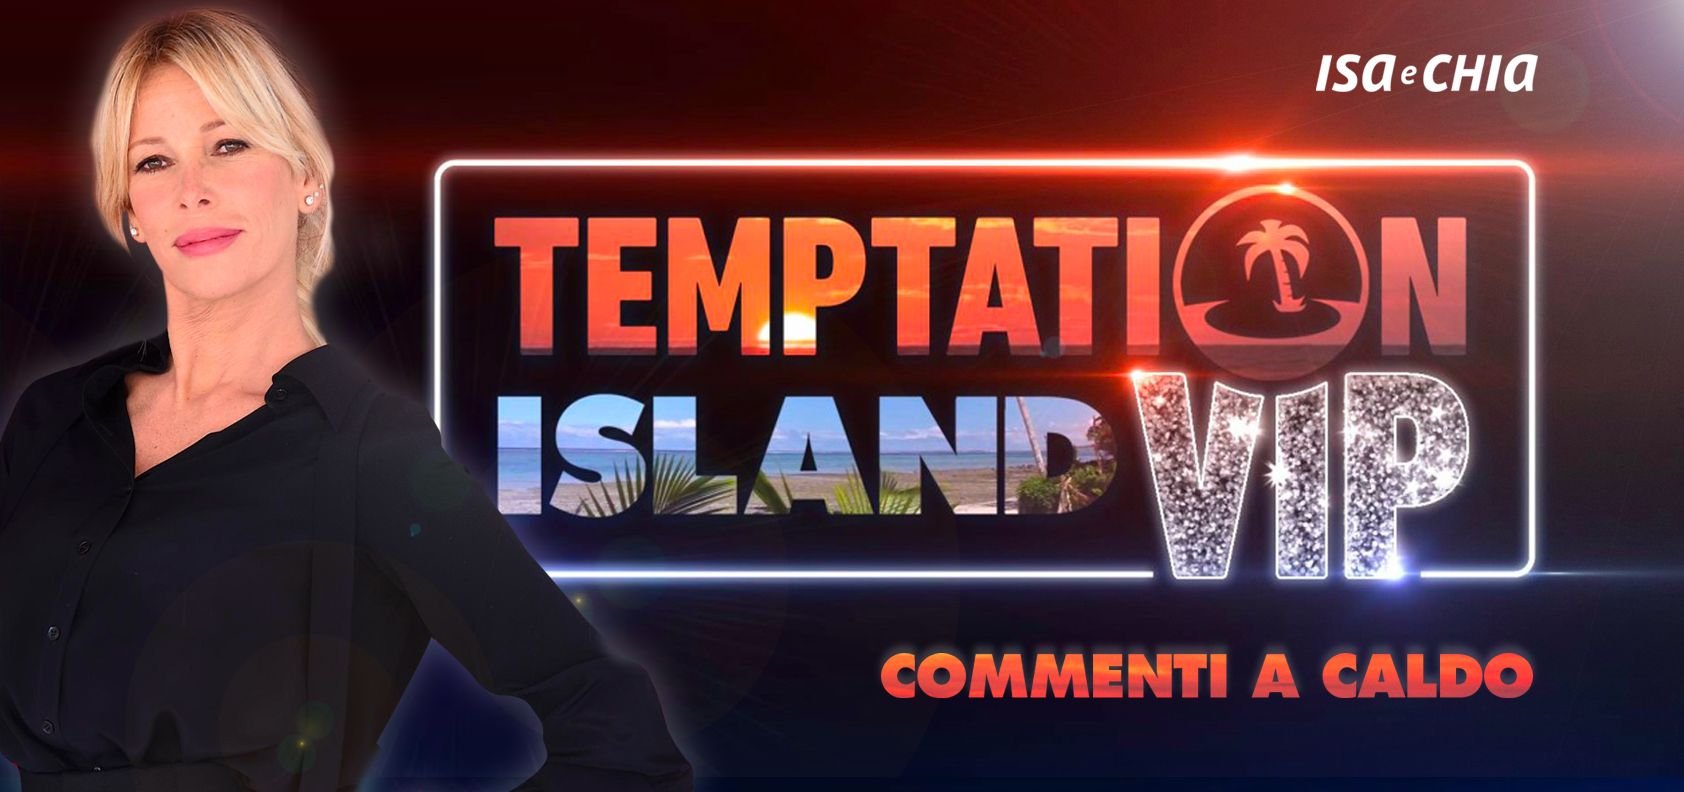 ‘Temptation Island Vip 2’, sesta puntata: commenti a caldo